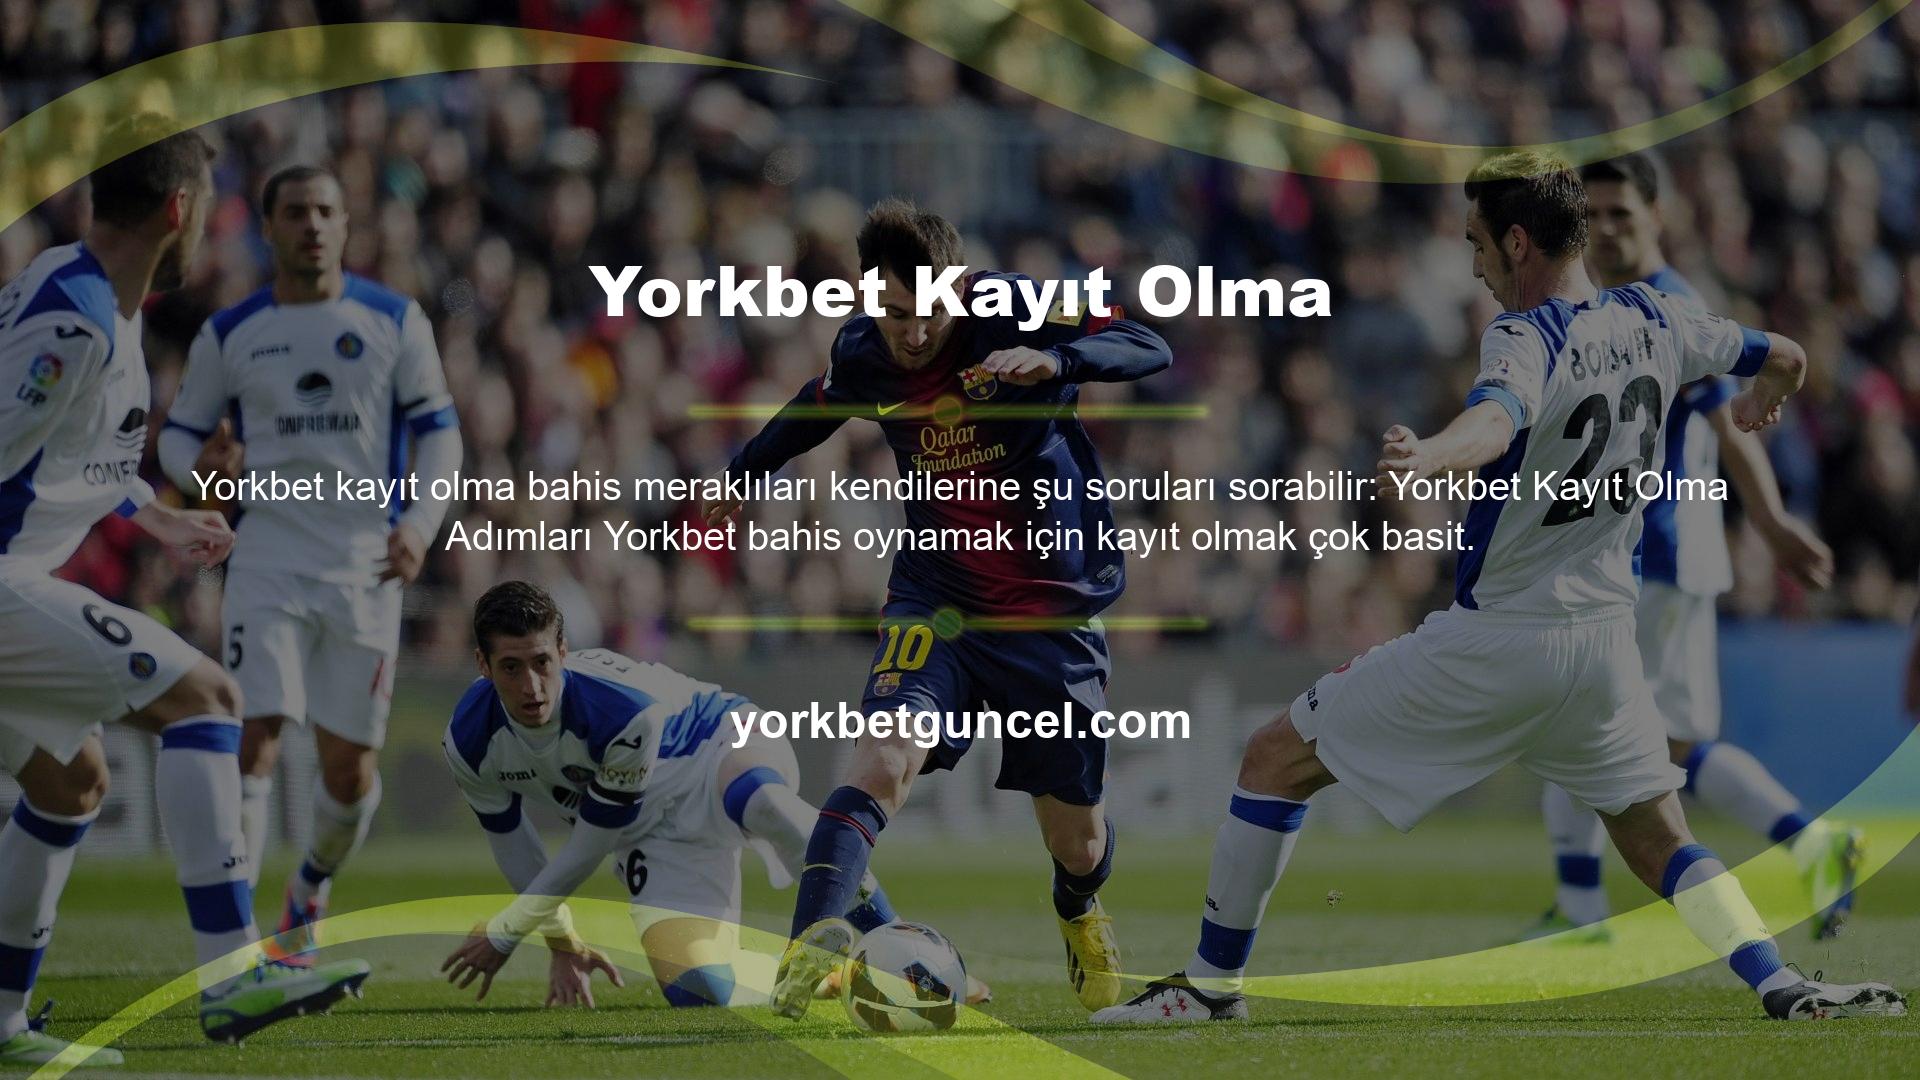 Yorkbet BTK, casino sektörüne ait oturum açma adreslerine sahip web sitelerini Türkiye'deki yasalara göre engelliyor